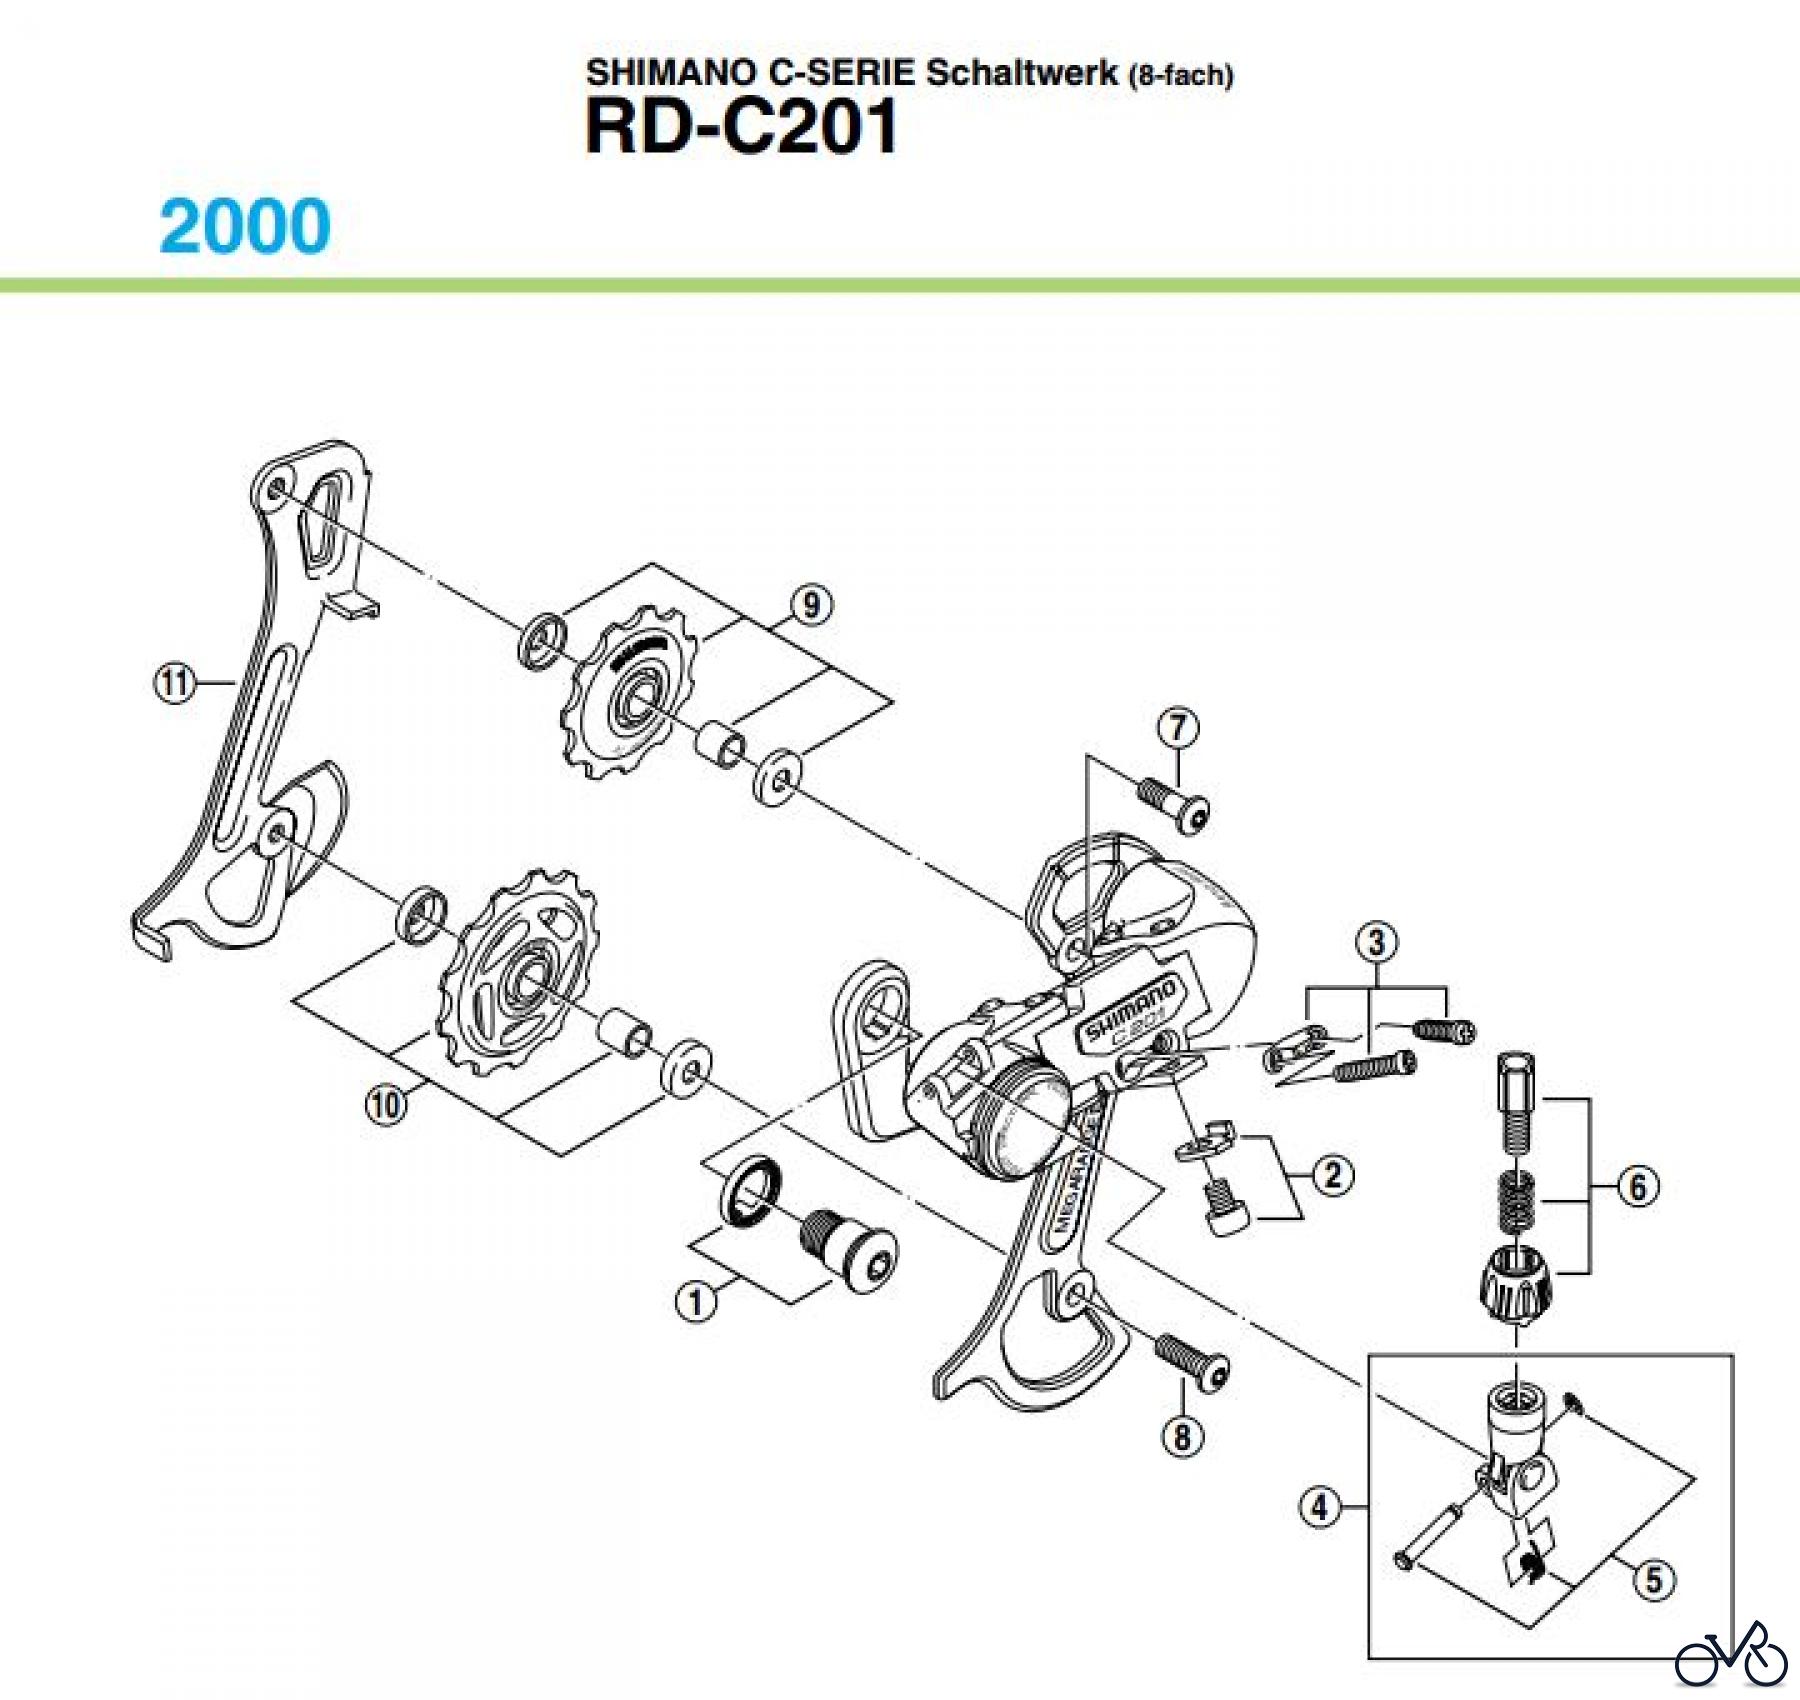  Shimano RD Rear Derailleur - Schaltwerk RD-C201-00